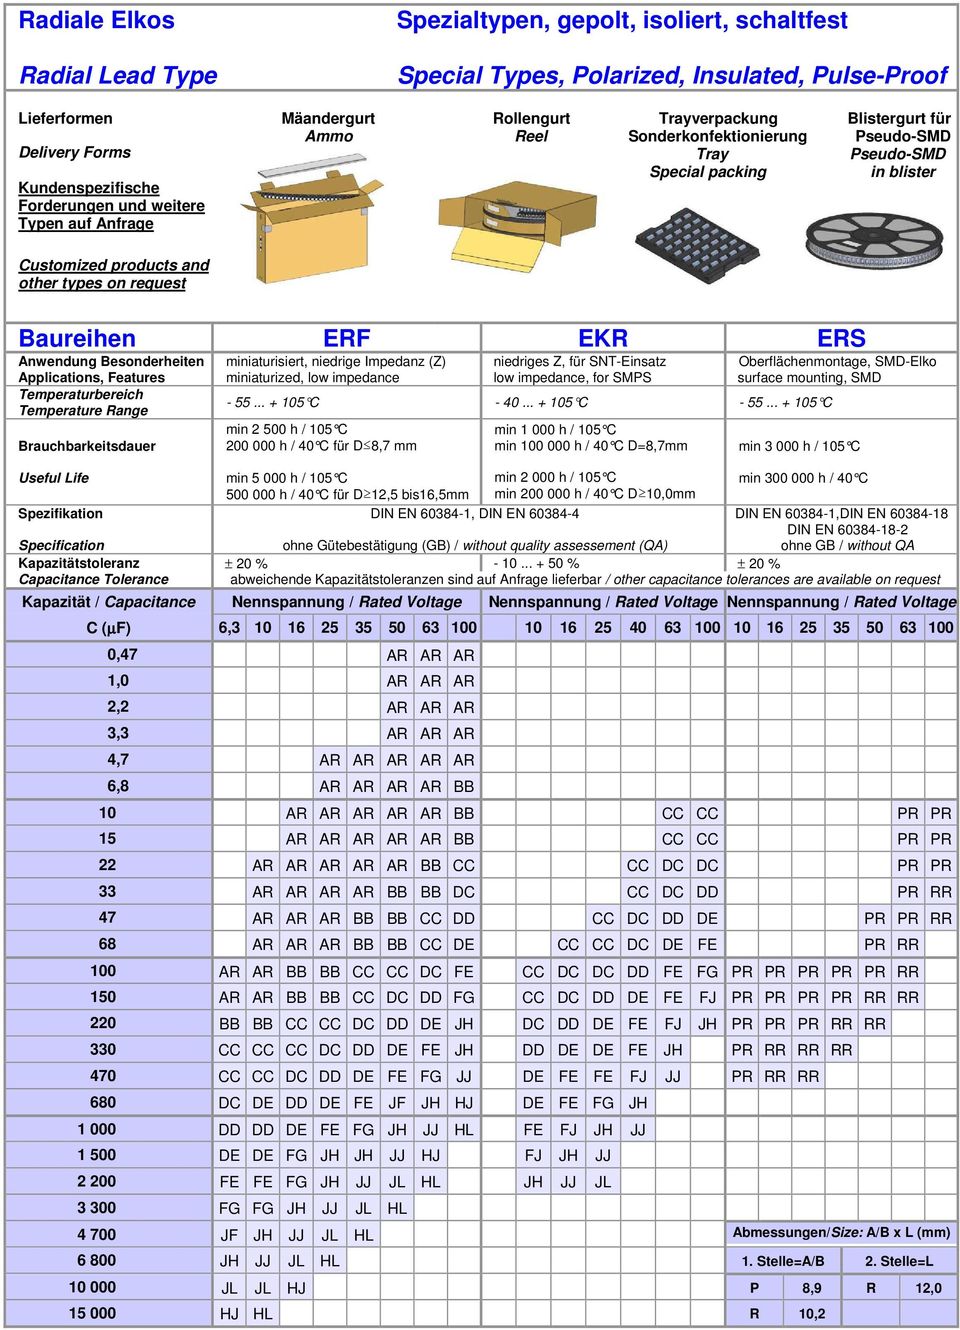 Baureihen ERF EKR ERS Anwendung Besonderheiten miniaturisiert, niedrige Impedanz (Z) miniaturized, low impedance niedriges Z, für SNT-Einsatz low impedance, for SMPS - 55... + 105 C - 40.